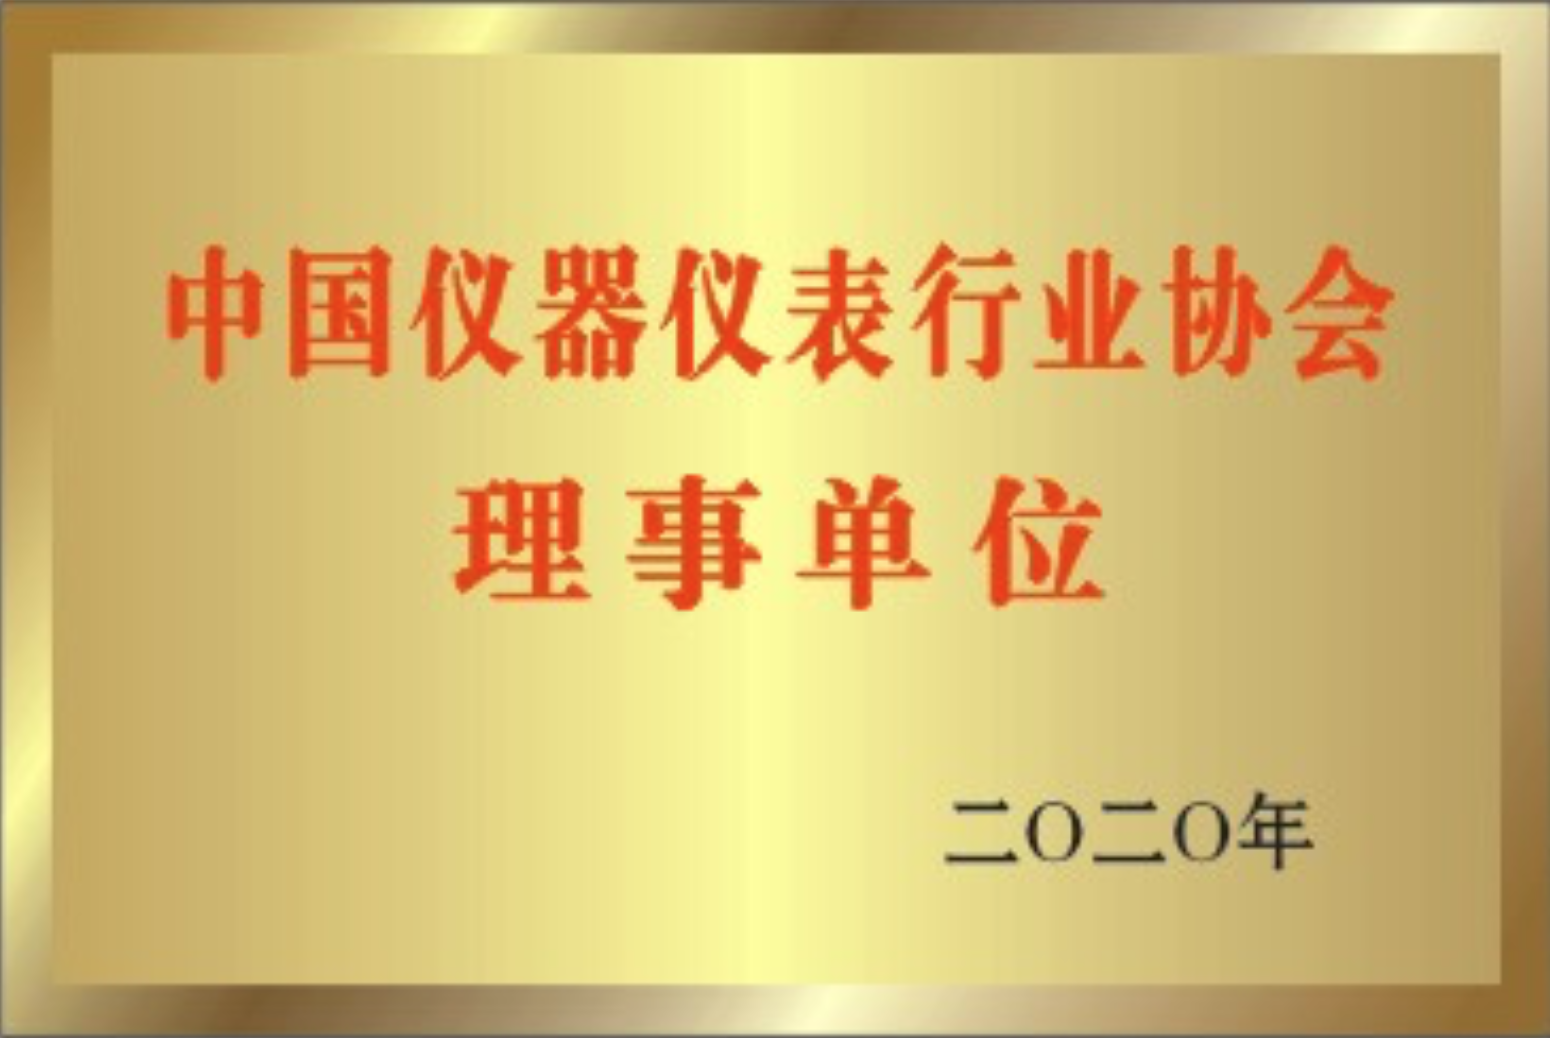 中国仪器仪表行业协会</br>理事单位